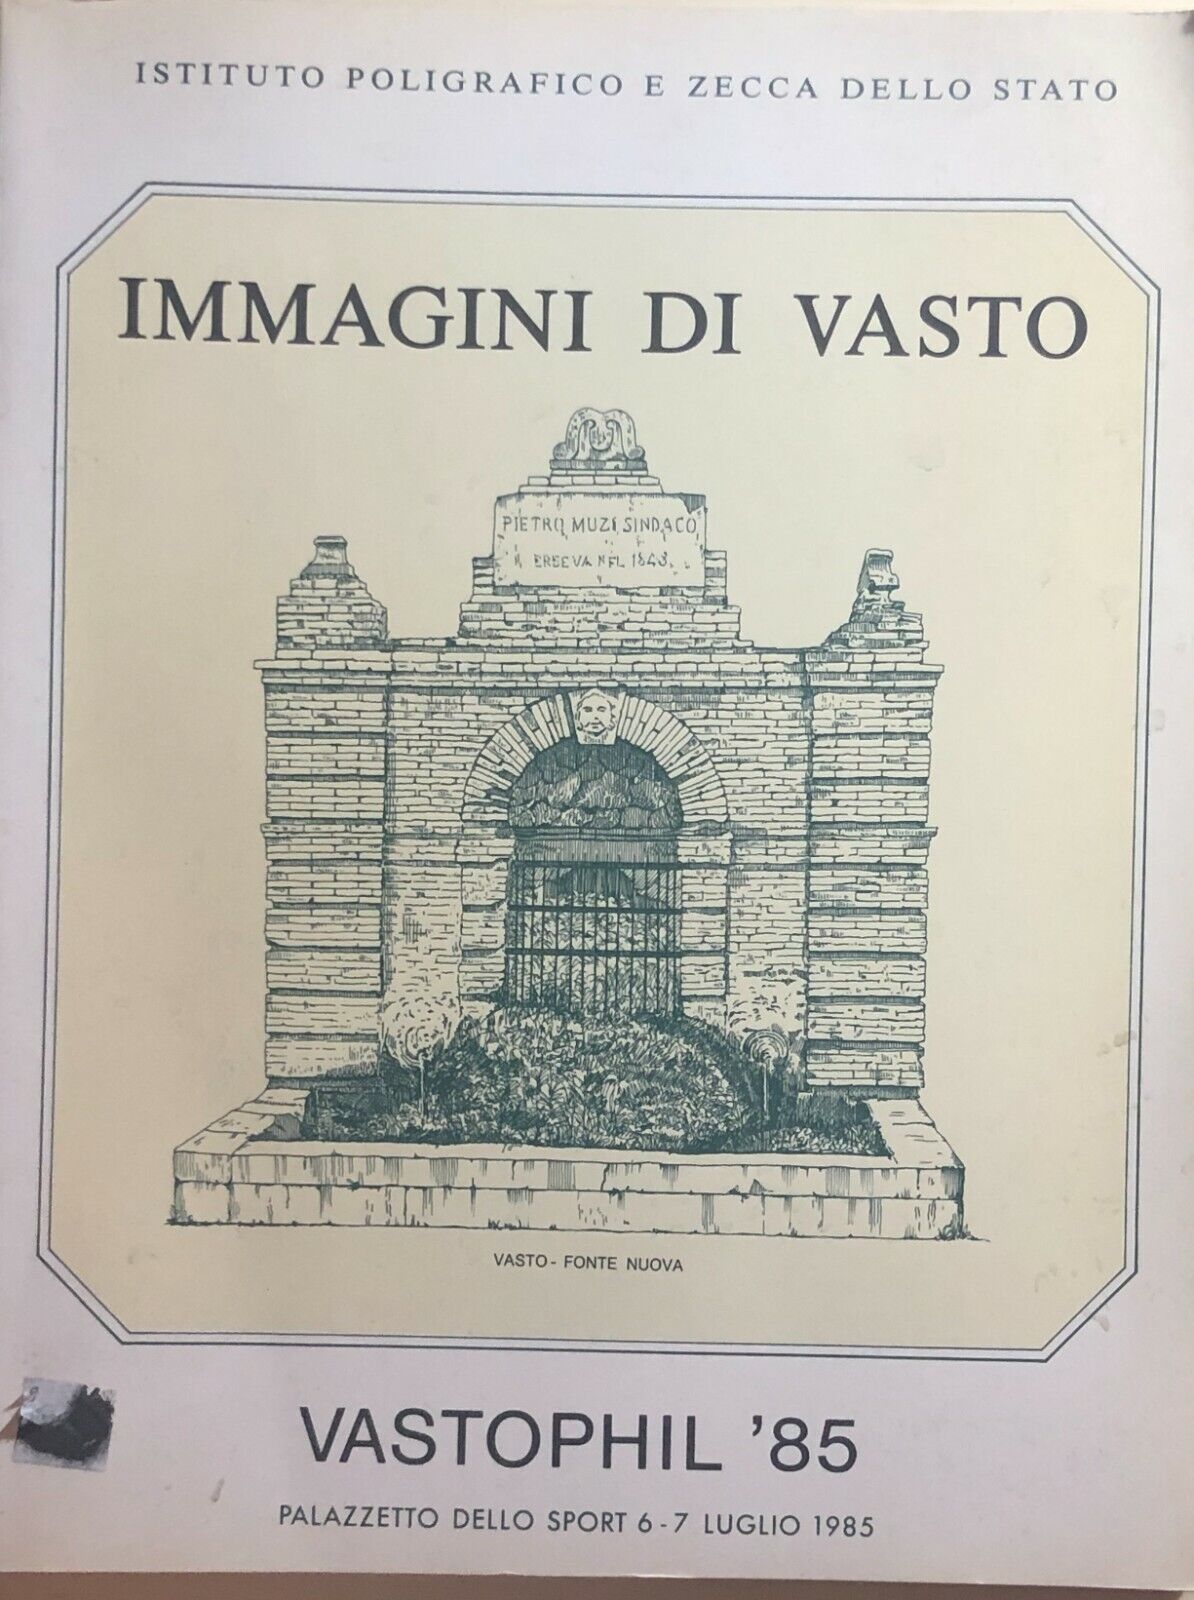 Immagini di Vasto - Vastophil ?85 di Ipzs, 1985